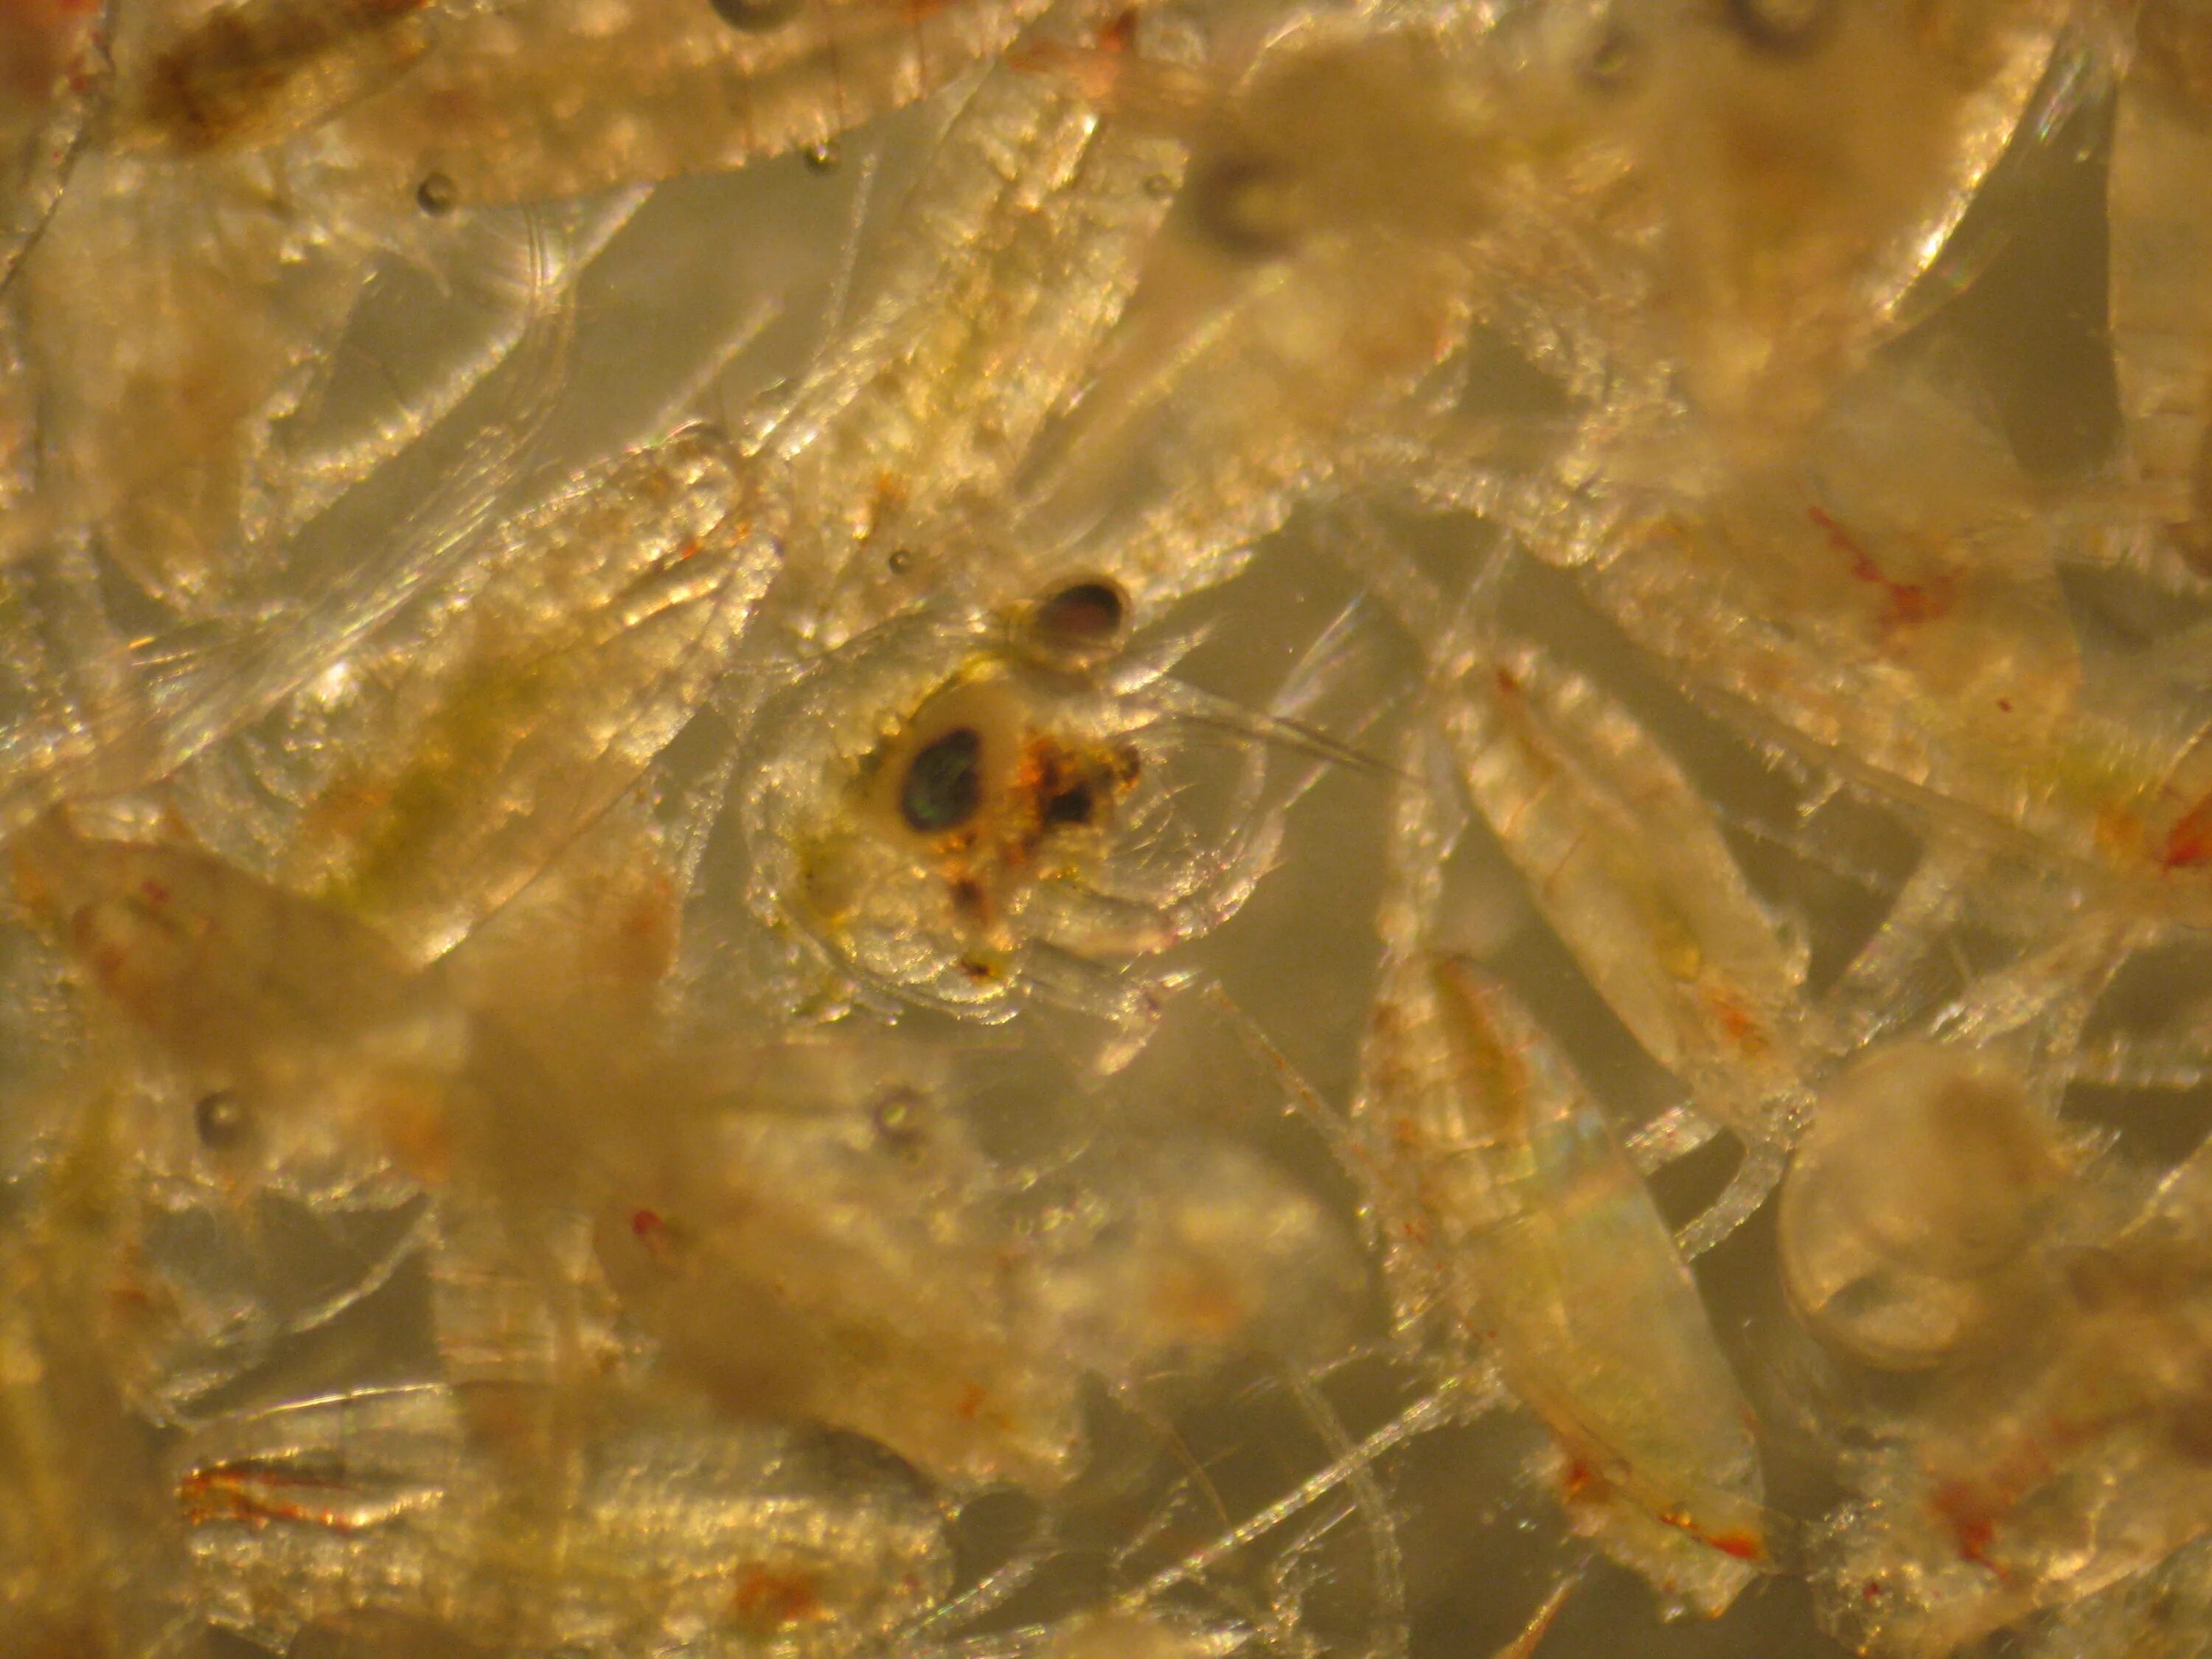 Личинка краба. Зоеа личинка краба. Мегалопа личинка краба. Личинка краба планктона. Стадия личинки у краба Камчатского.